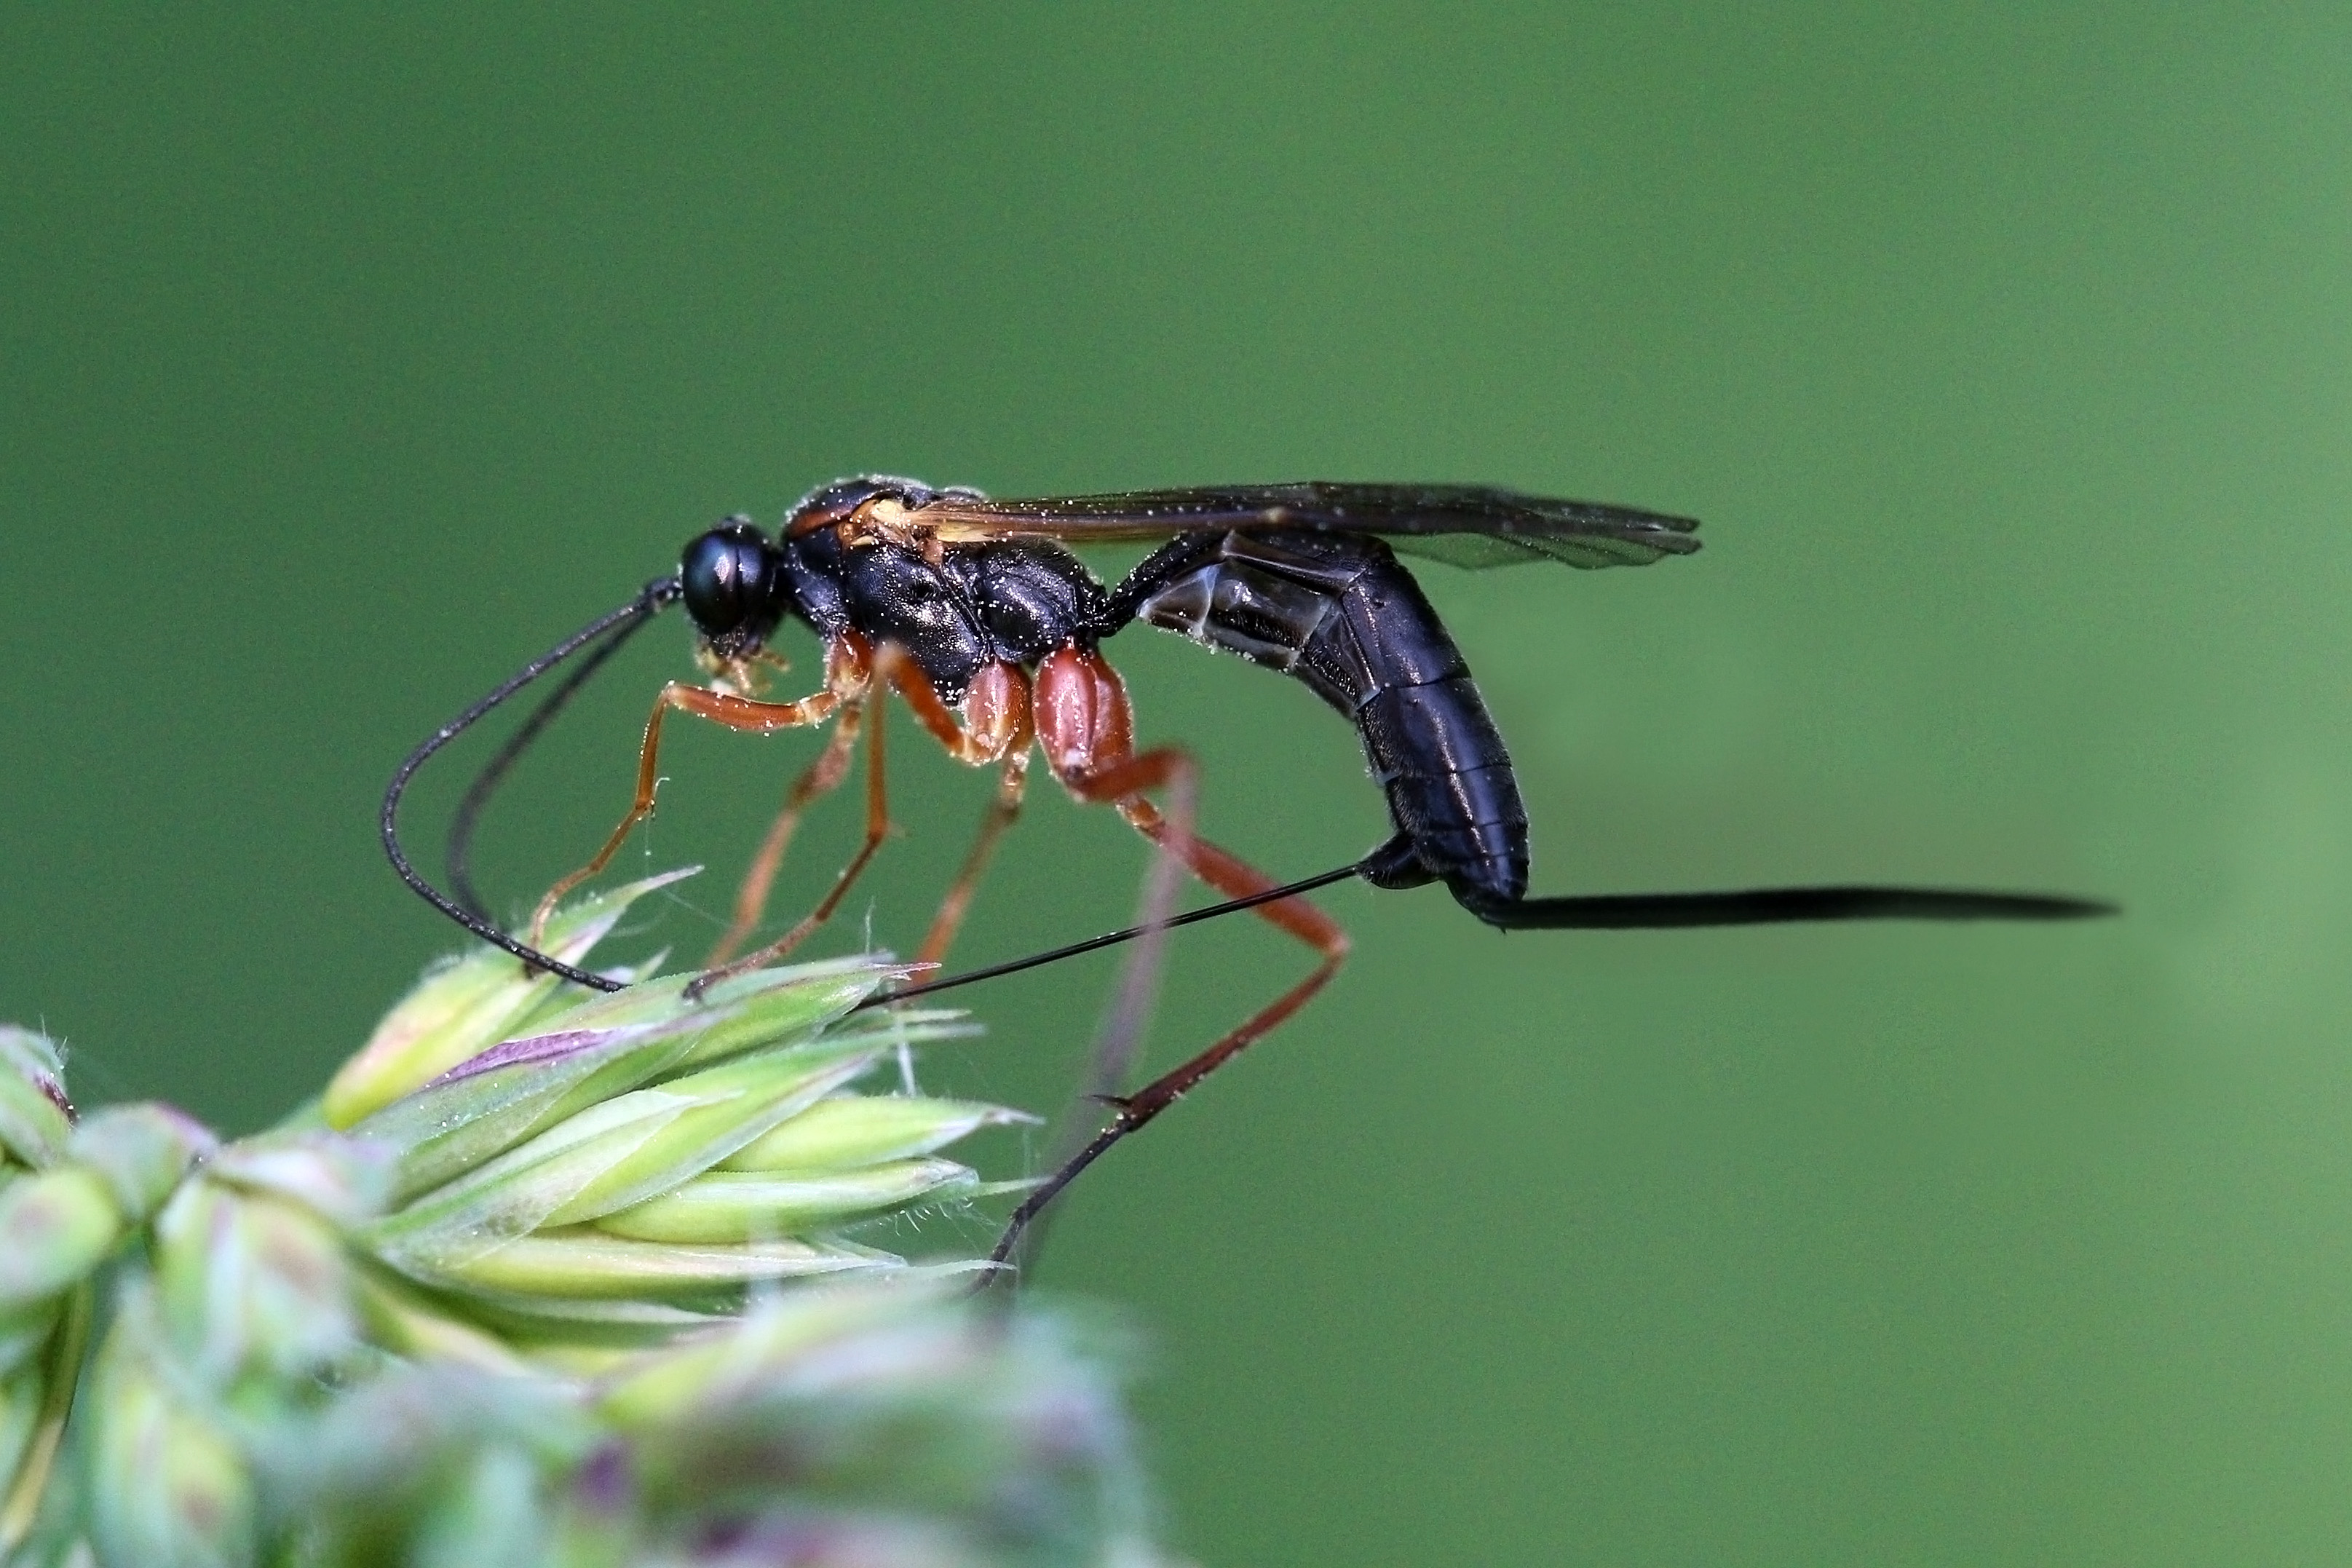 Ichneumon wasp (Echthrus reluctator) female